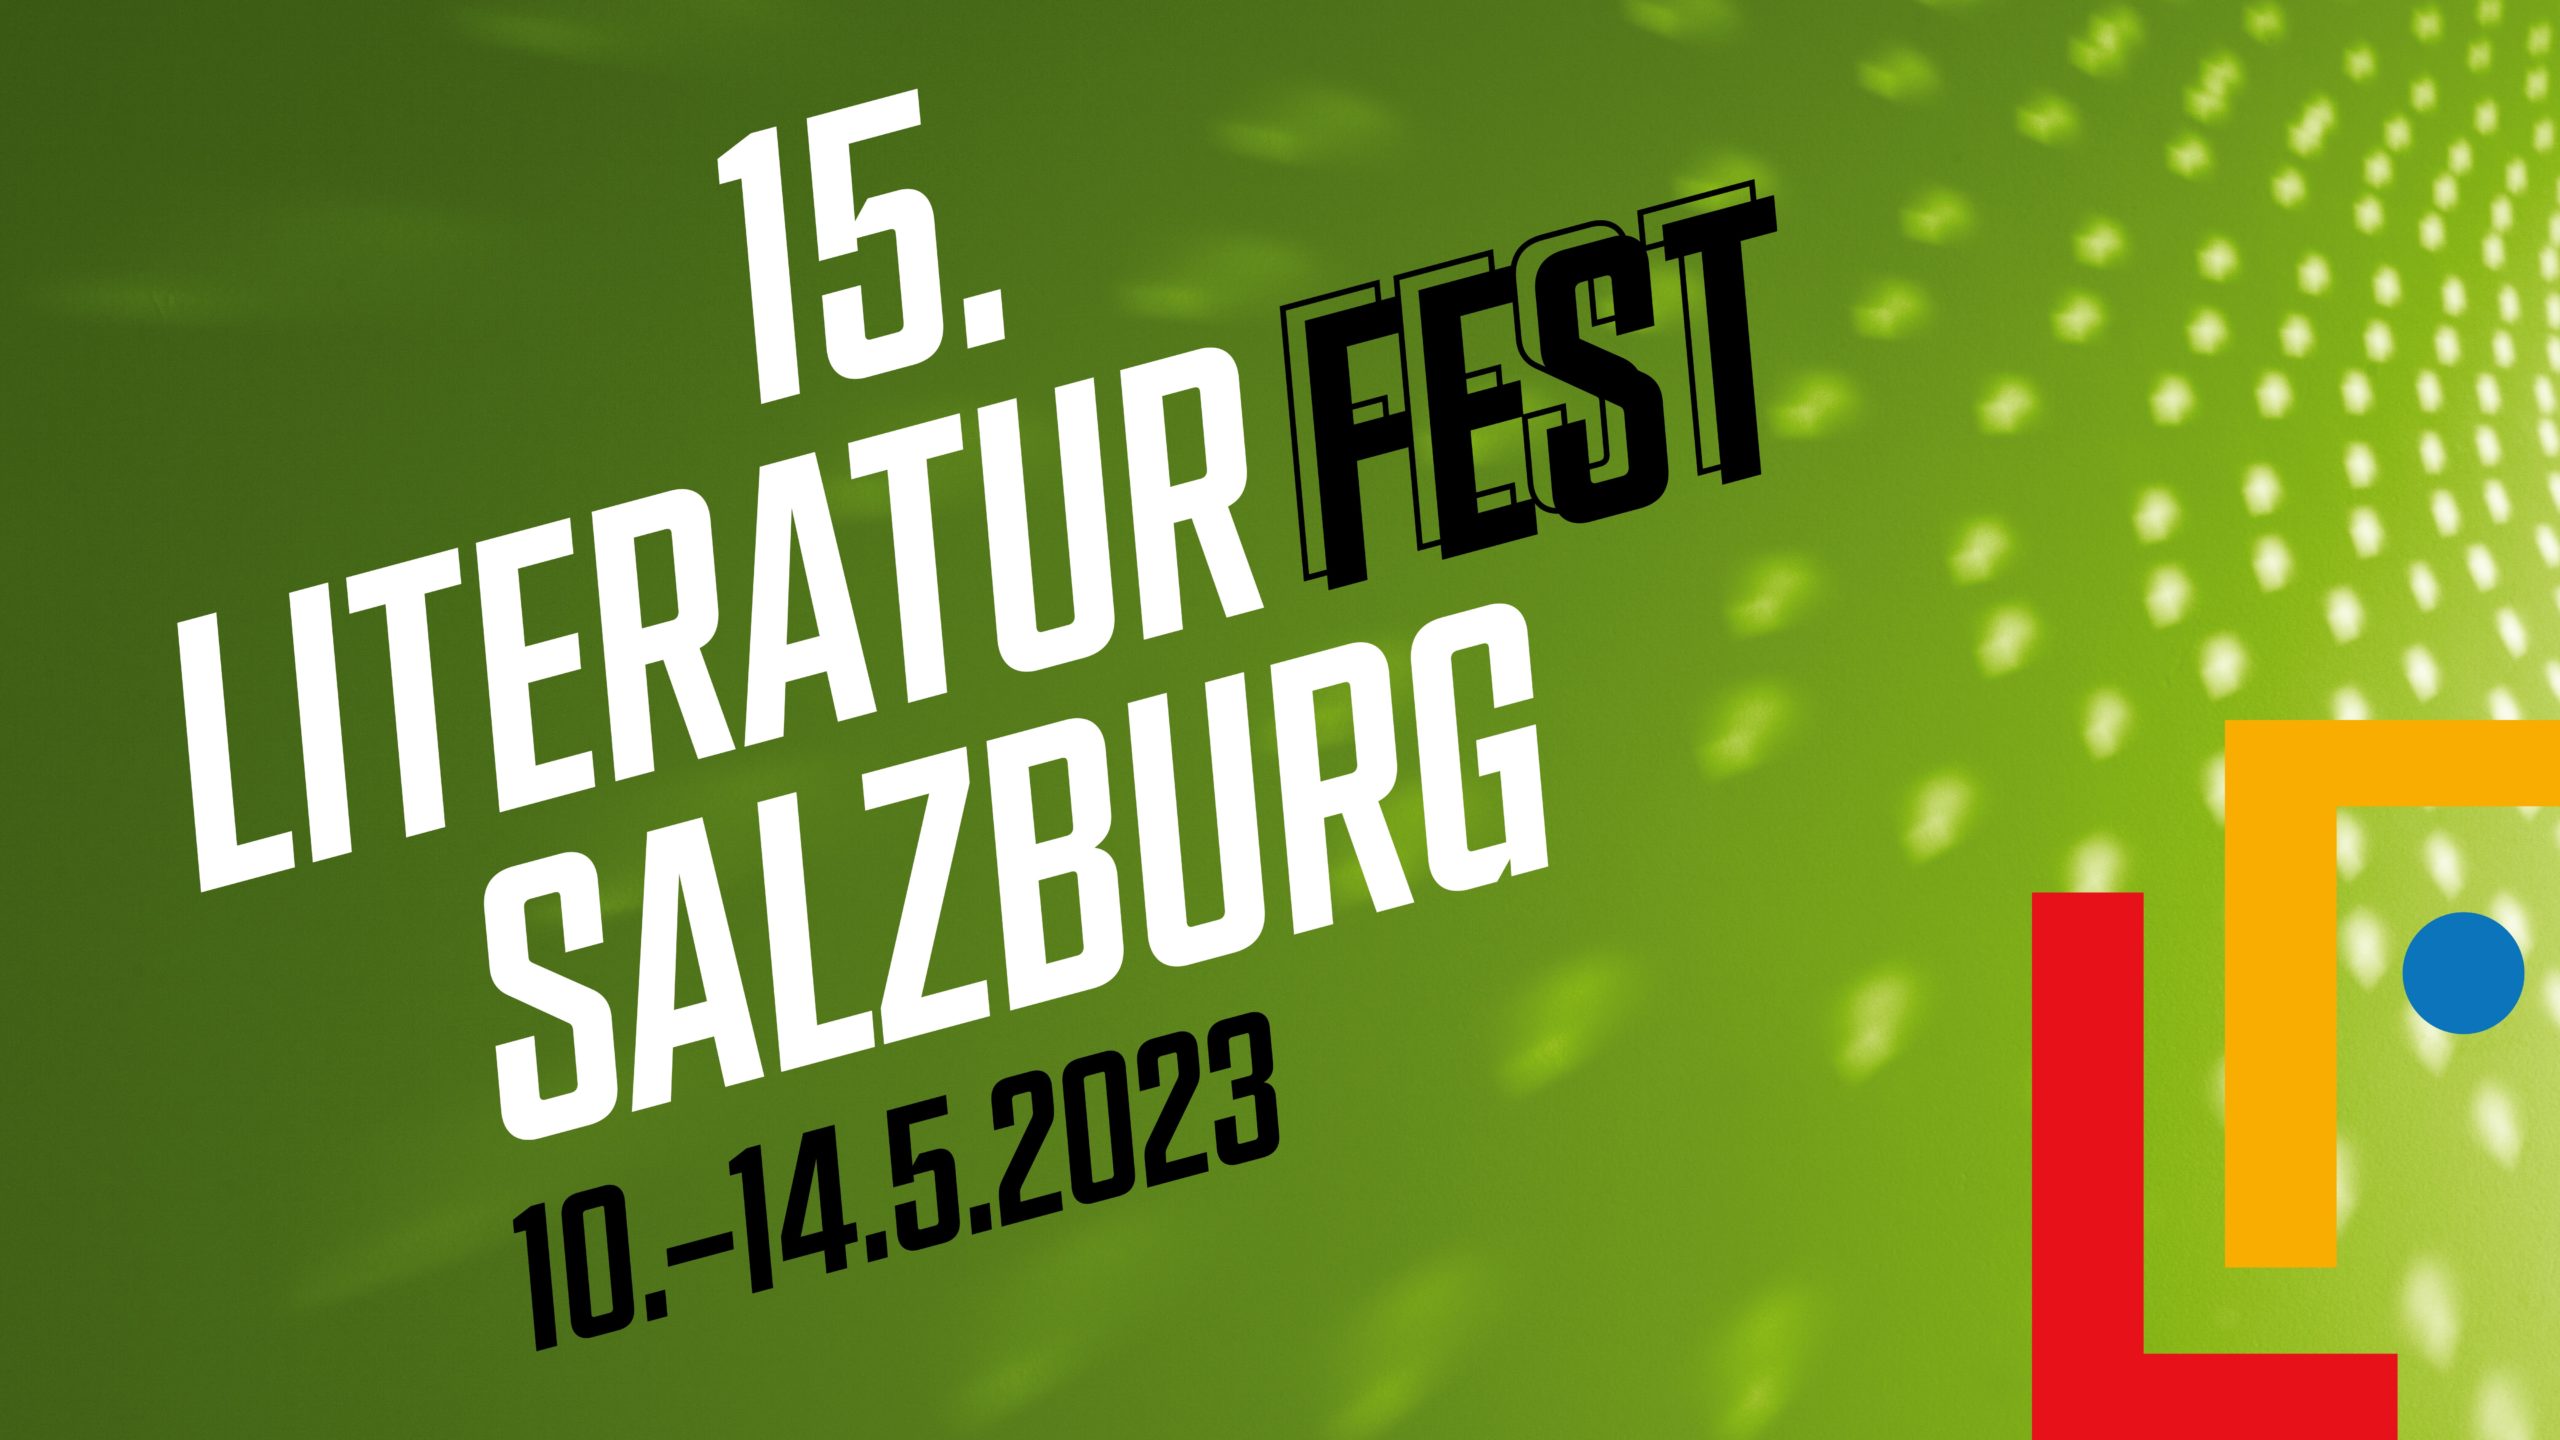 (c) Literaturfest-salzburg.at